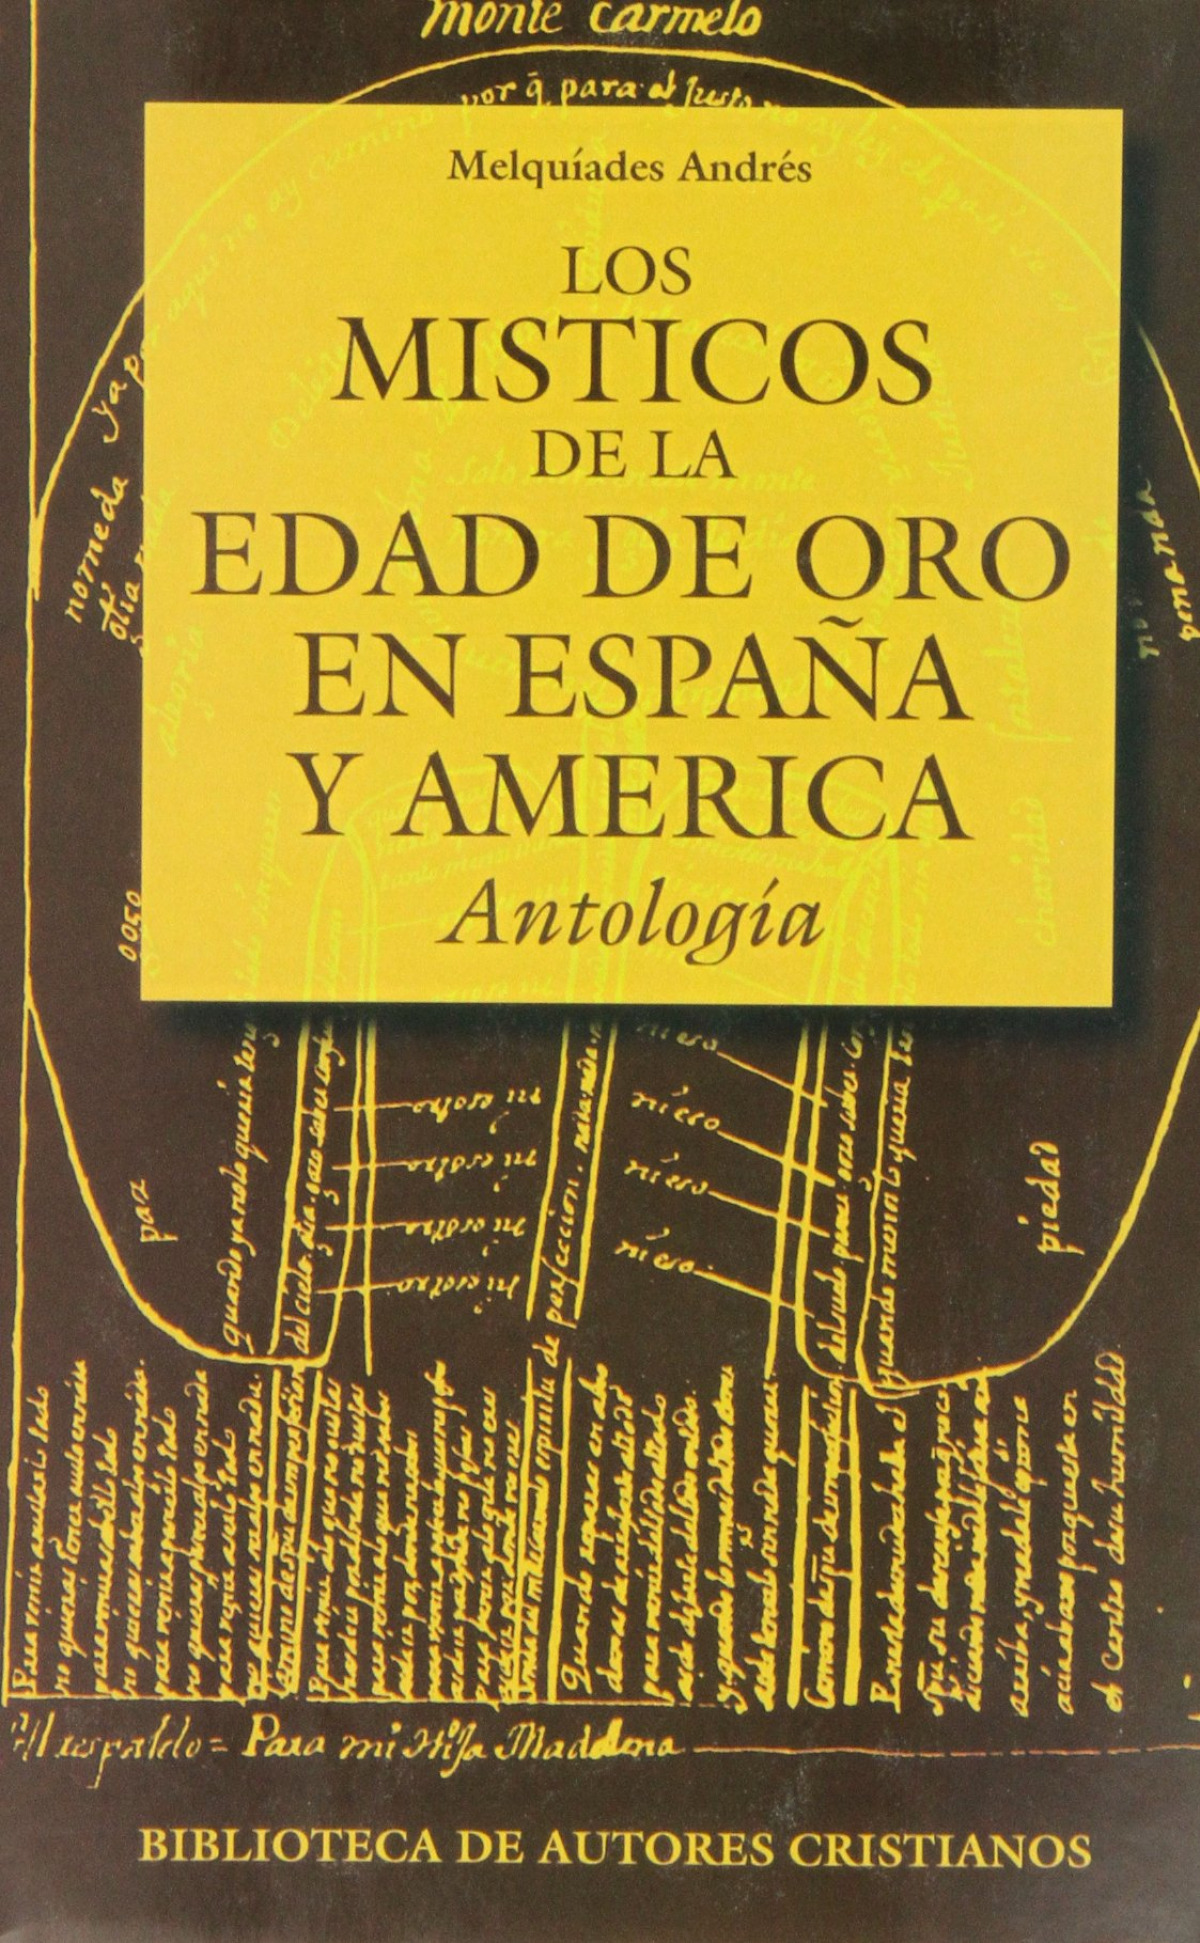 Los místicos de la Edad de Oro en España y América - Andrés Martín, Melquiades